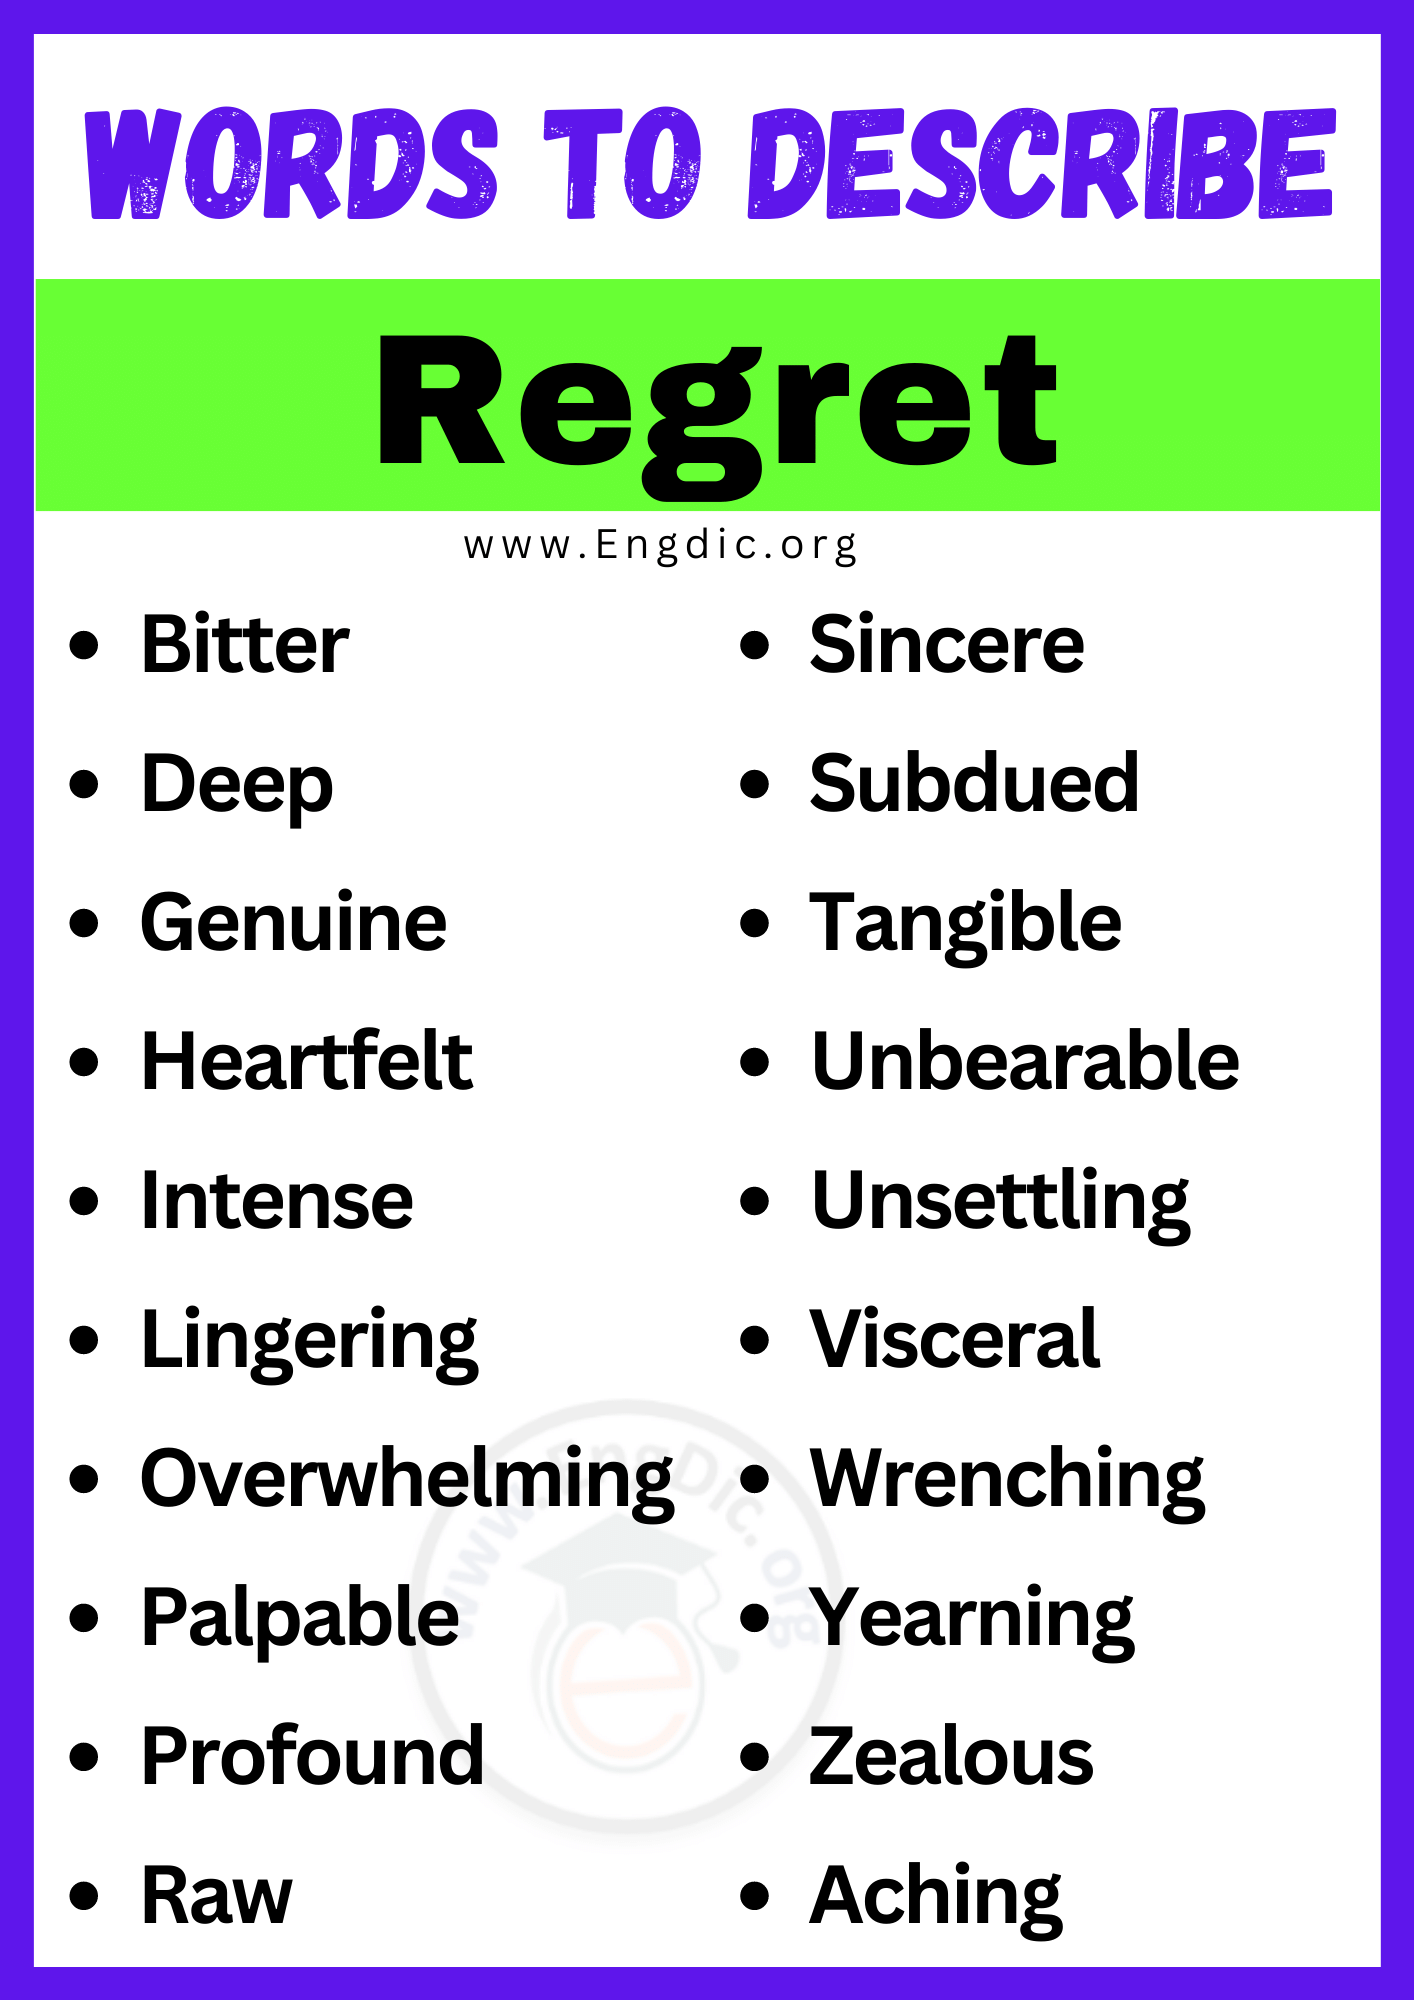 Words to Describe Regret